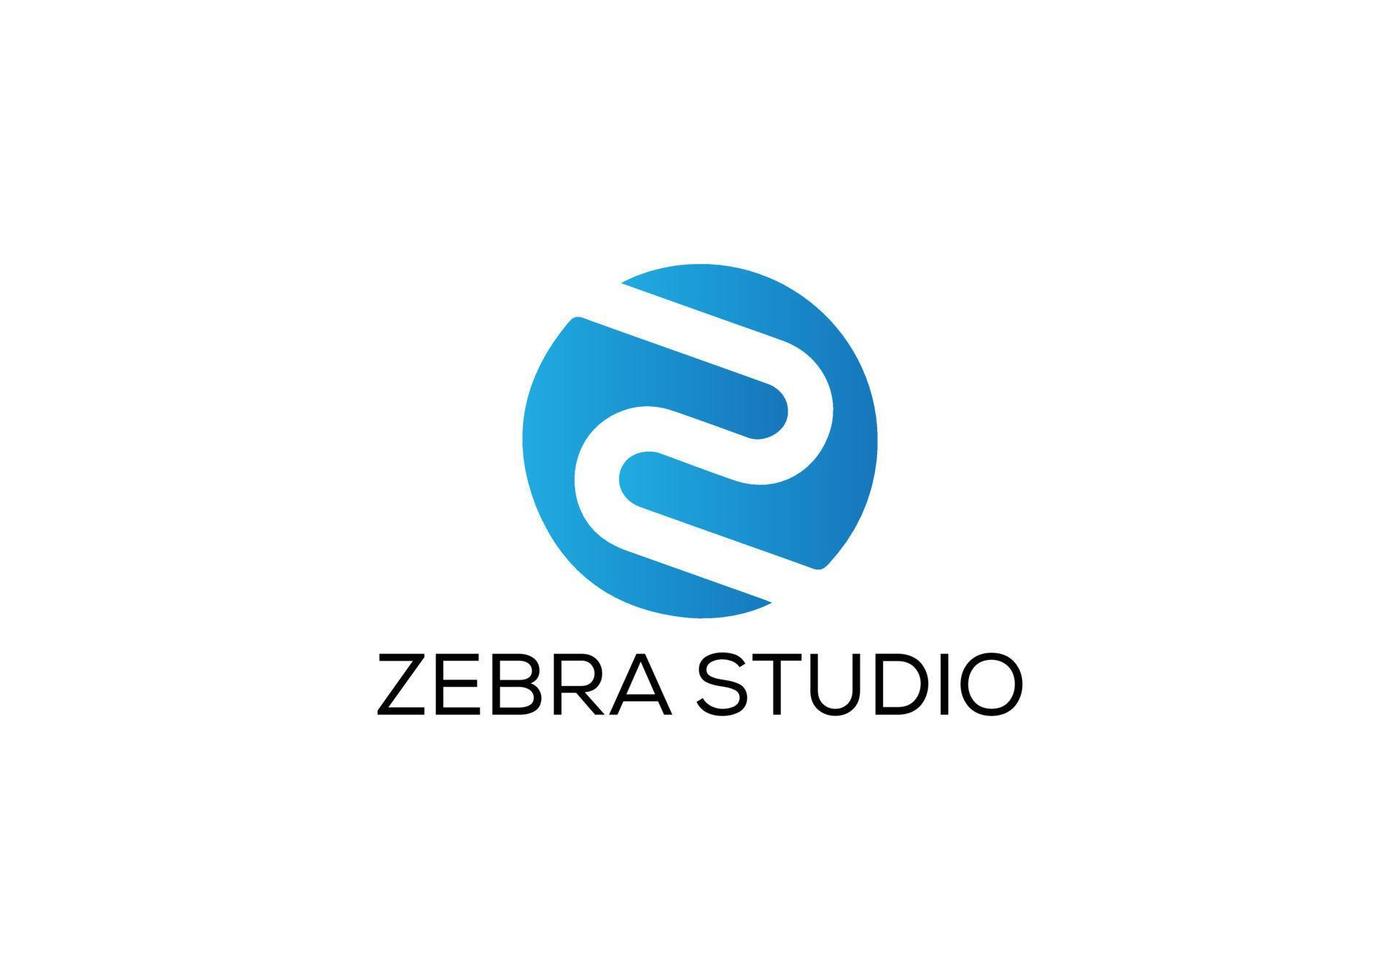 Zebra Studio Abstract z letter modern lettermarks logo design vector